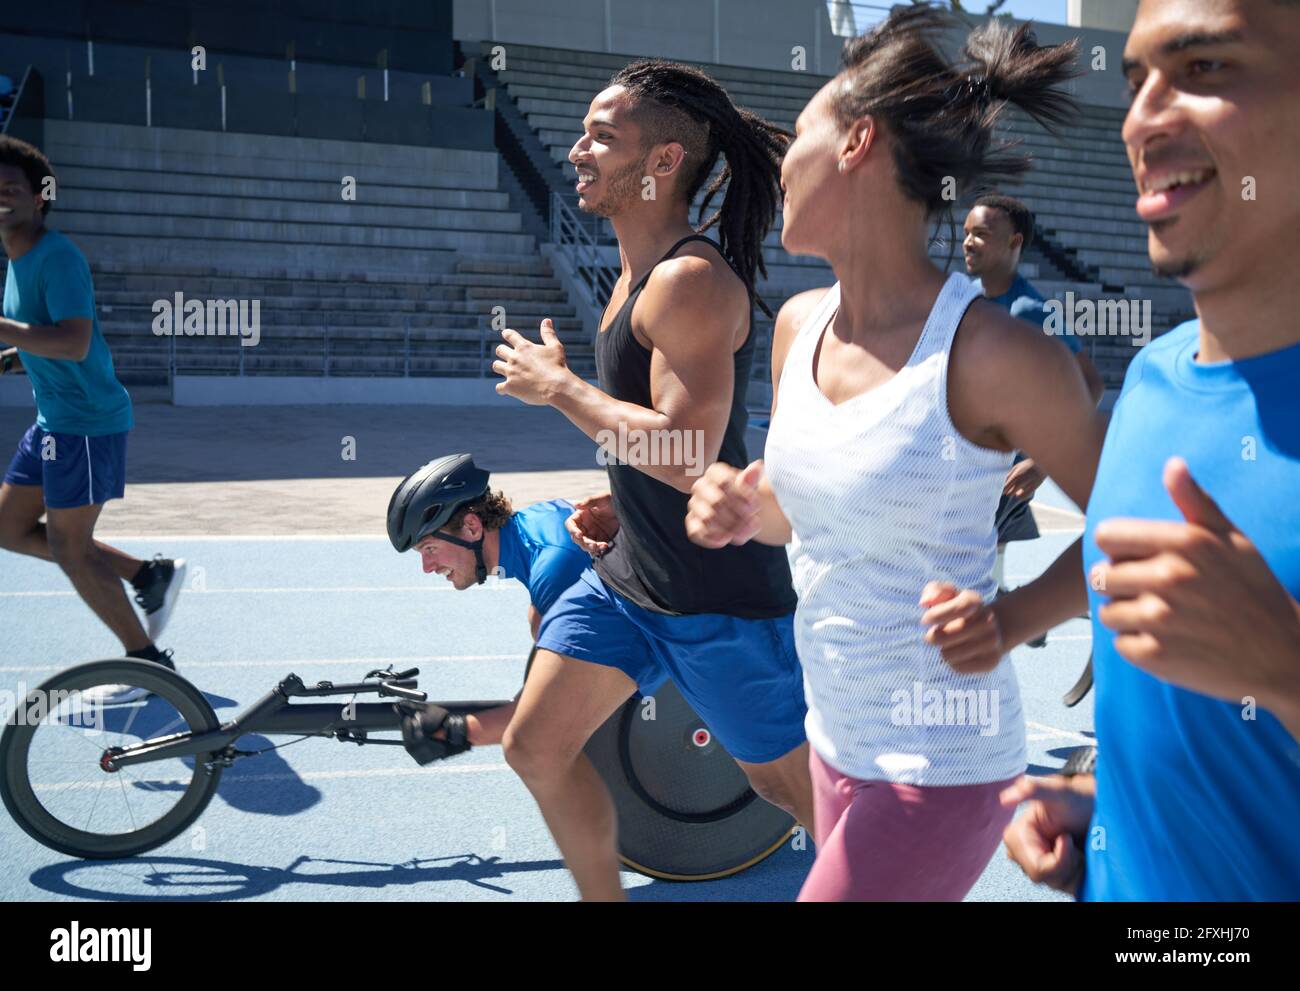 Athleten laufen und im Sportrollstuhl auf sonniger Sportstrecke Stockfoto